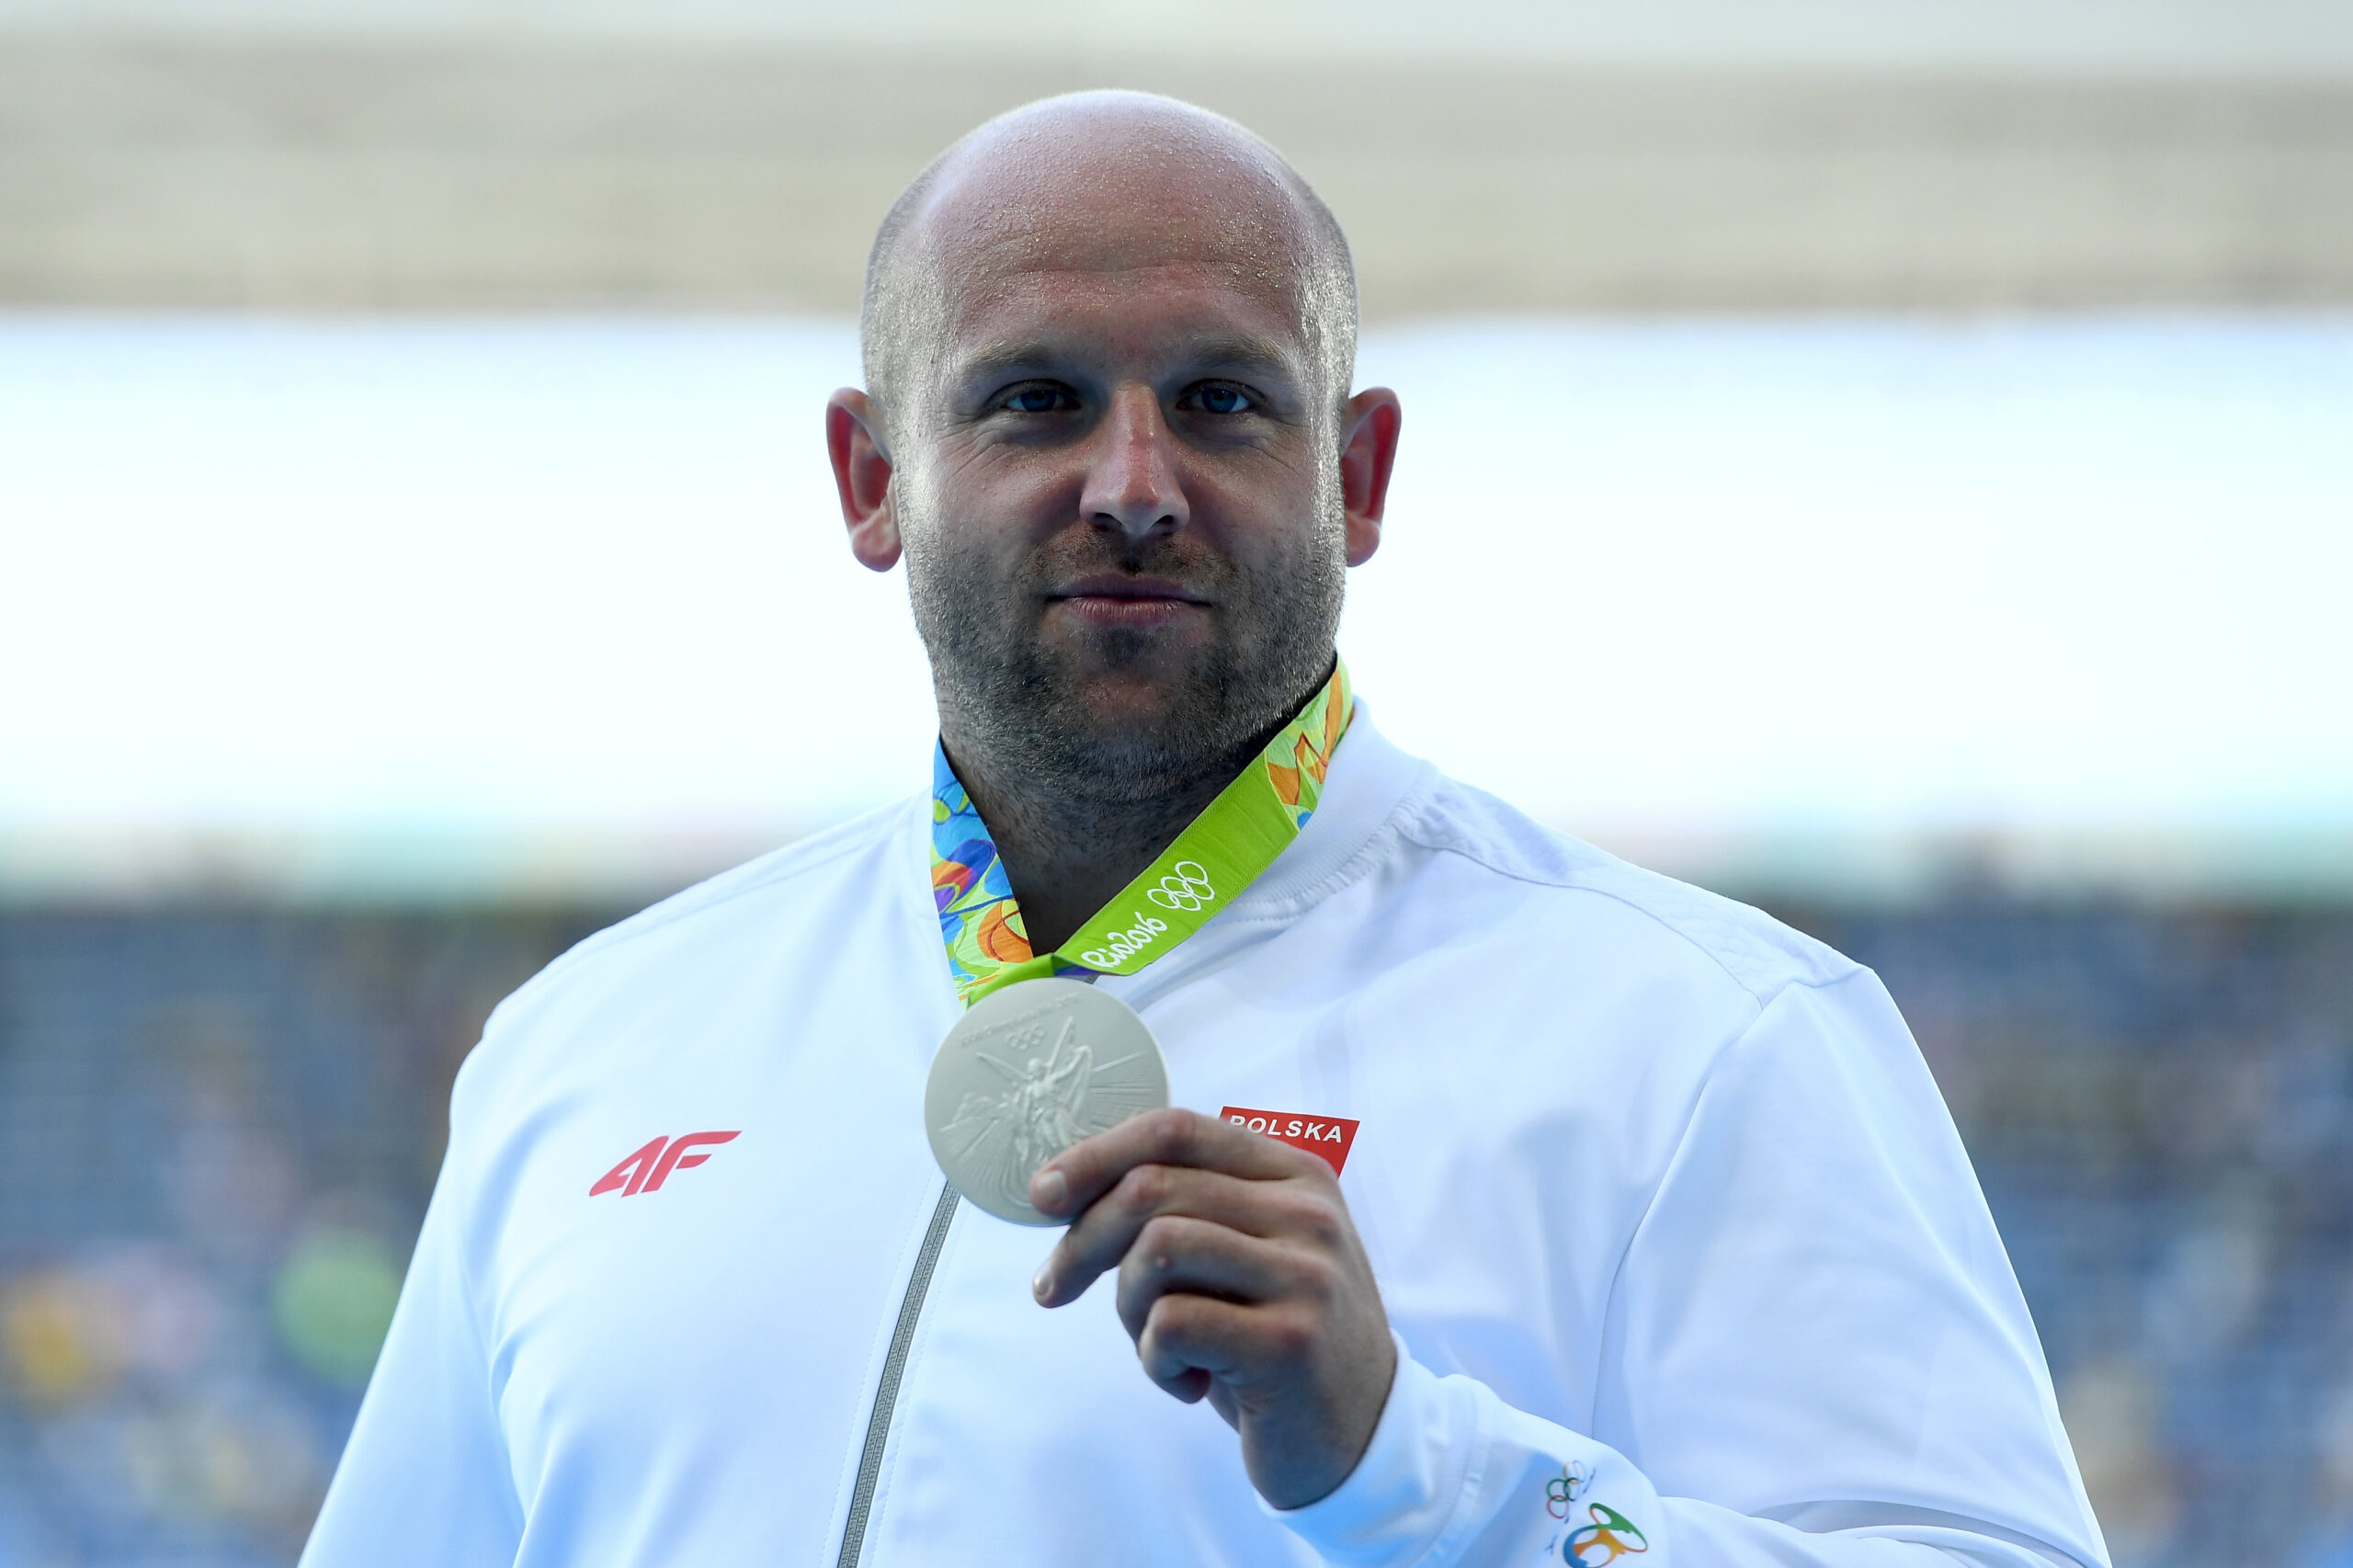 VĐV Olympic đấu giá huy chương bạc của mình để cứu bé trai 3 tuổi bị ung thư